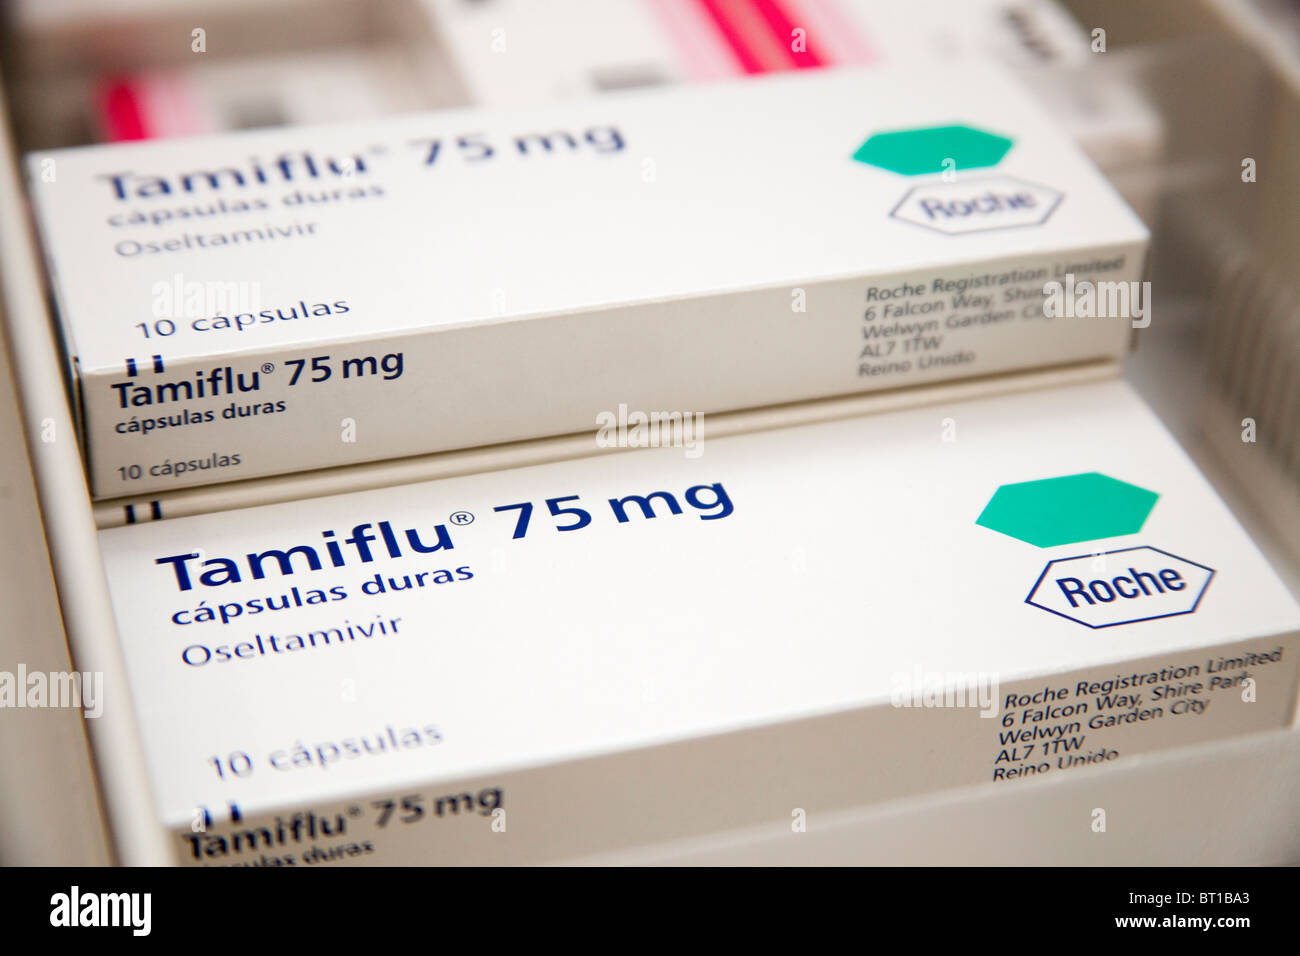 Medicamento Tamiflu en una farmacia Tamiflu medicine in a pharmacy Stock Photo